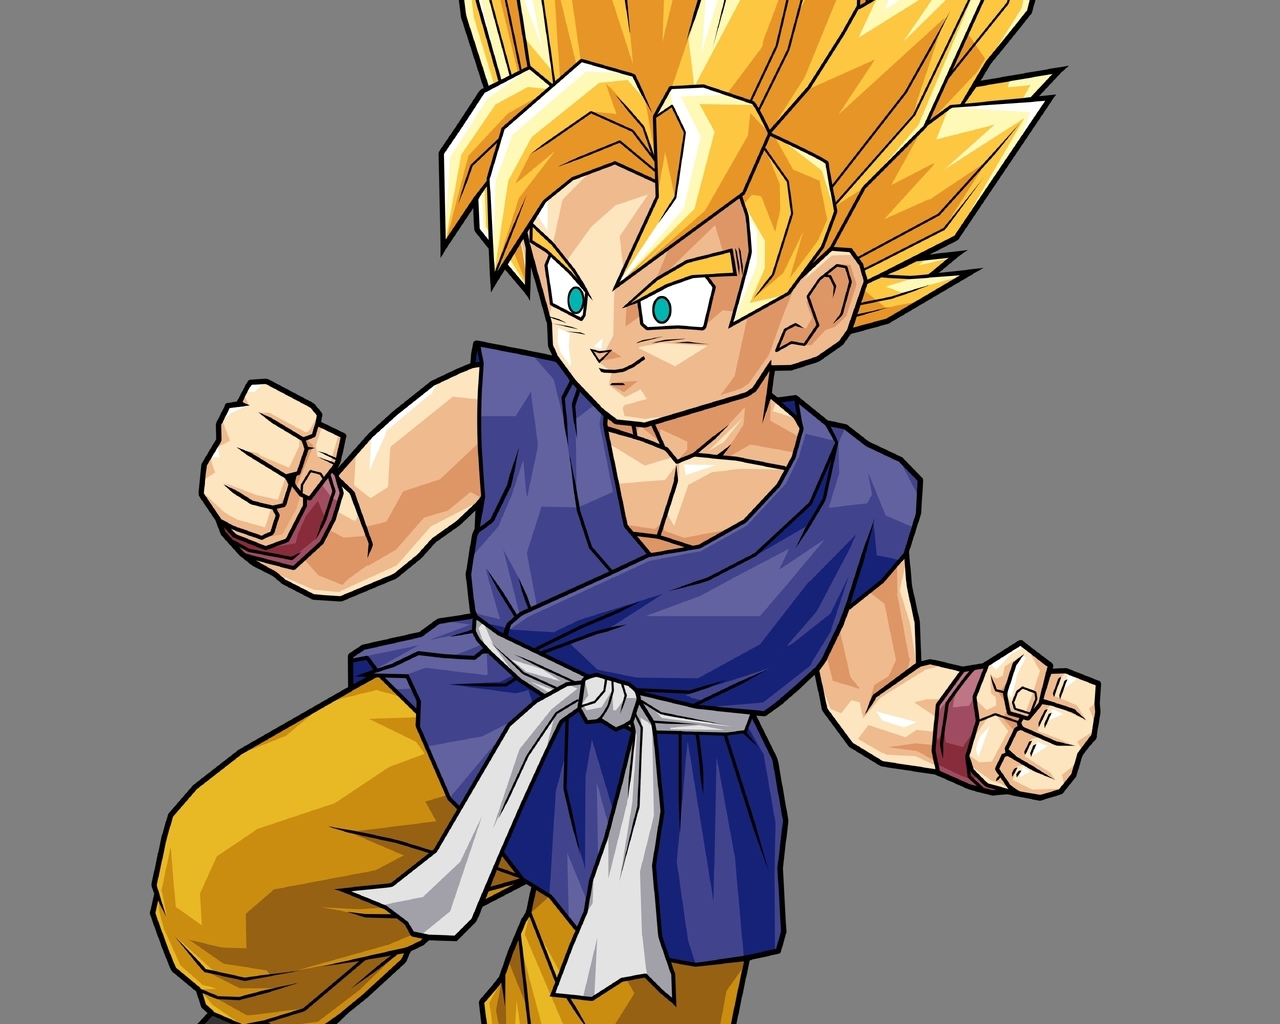 Image: Son Goku, Dragon Ball, gray background, Super Saiyan, Kakarotto